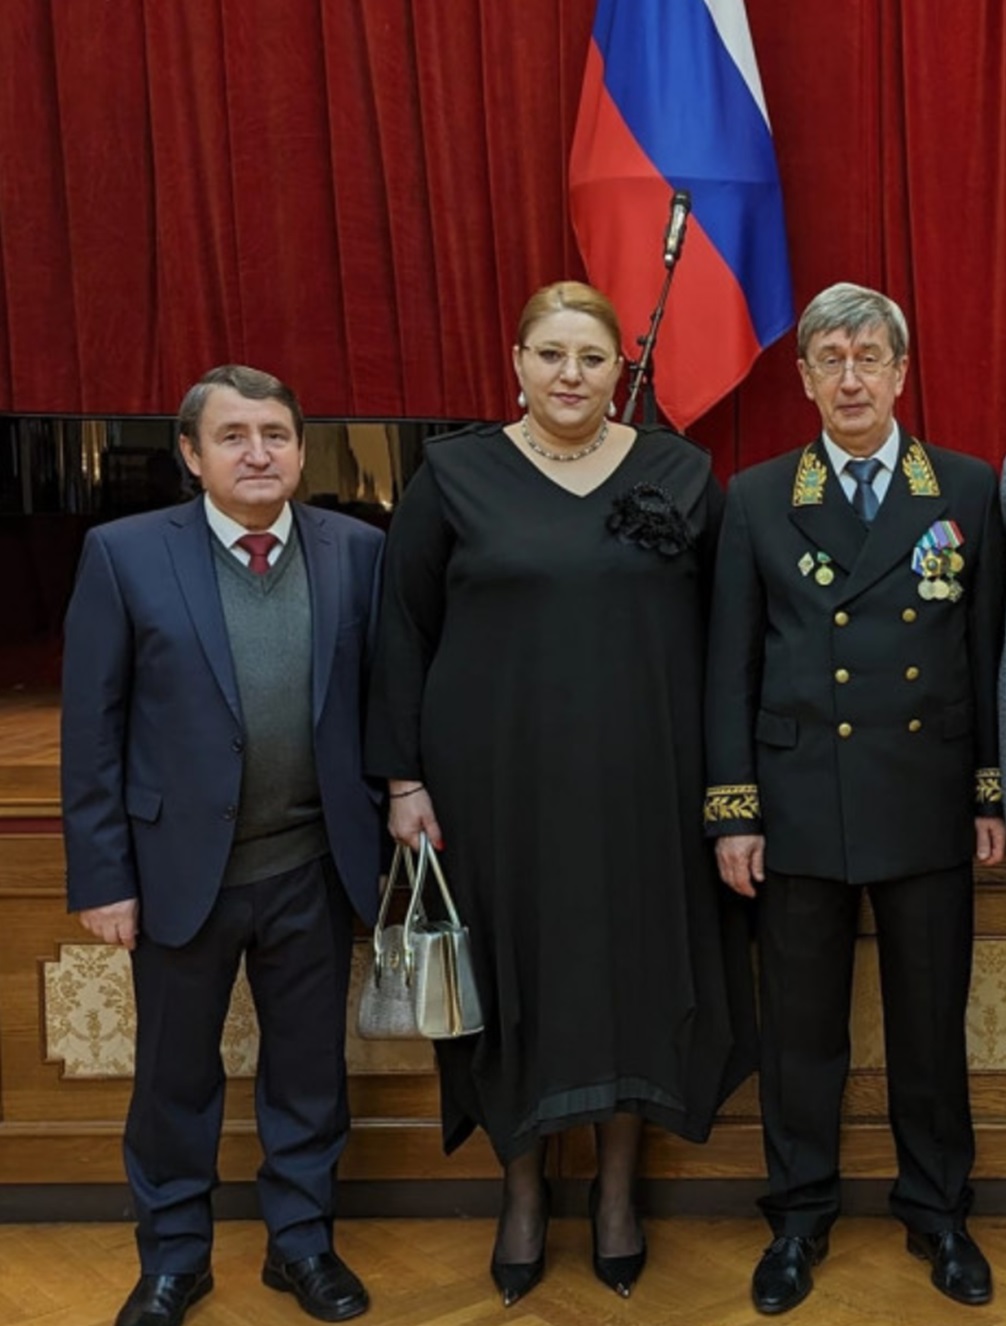 Діана Шошоака, поруч з нею у формі посол Росії в Румунії Валерій Кузьмін під час прийому до дня російського дипломата